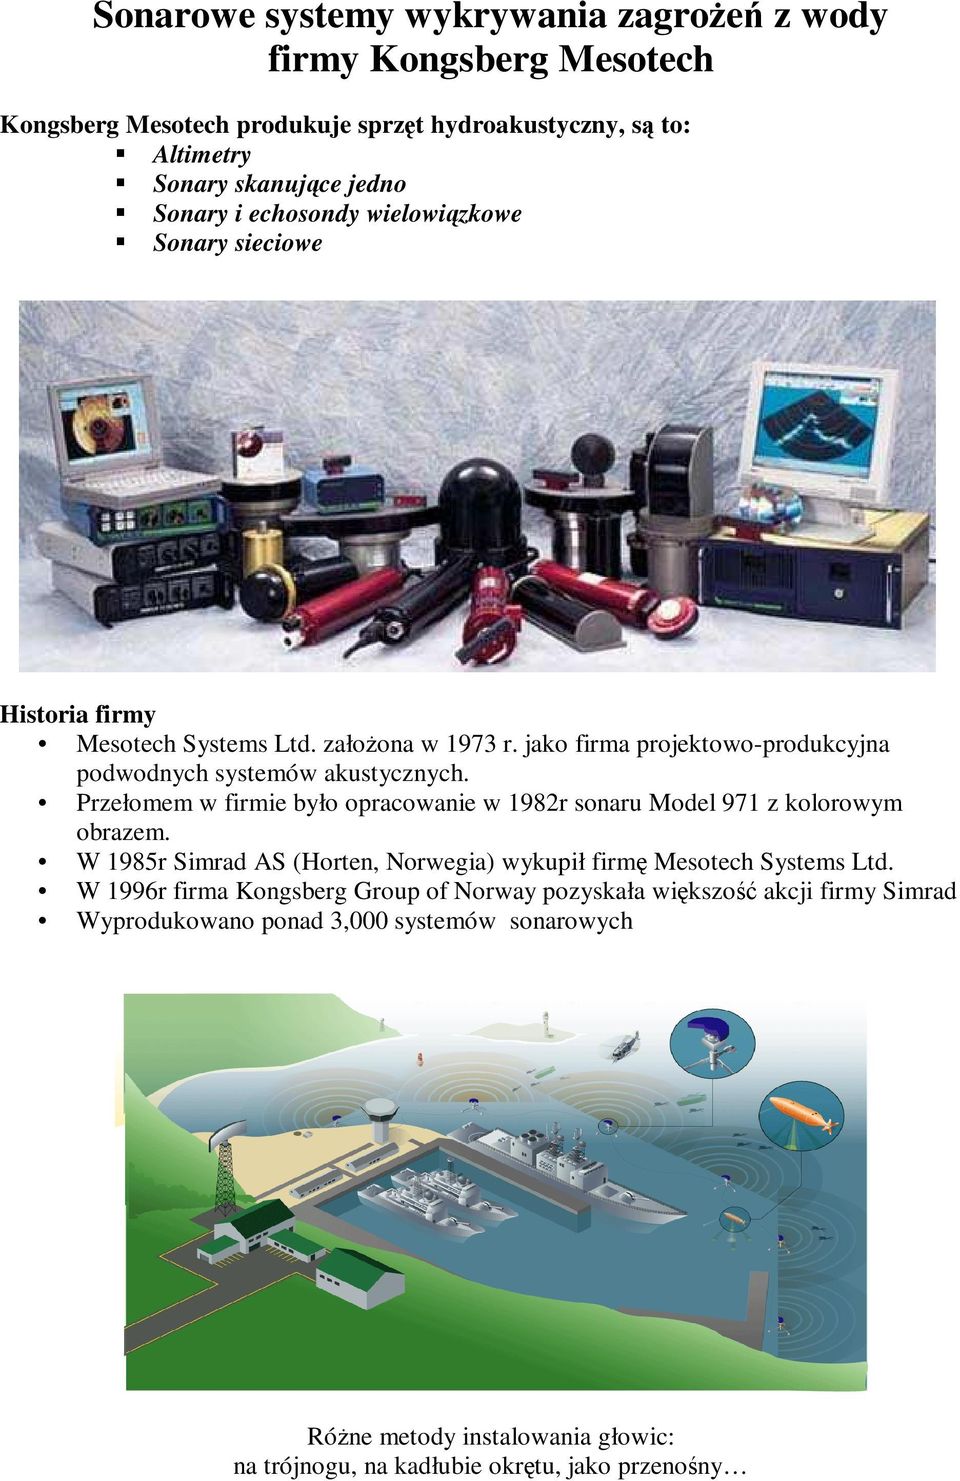 Przełomem w firmie było opracowanie w 1982r sonaru Model 971 z kolorowym obrazem. W 1985r Simrad AS (Horten, Norwegia) wykupił firmę Mesotech Systems Ltd.